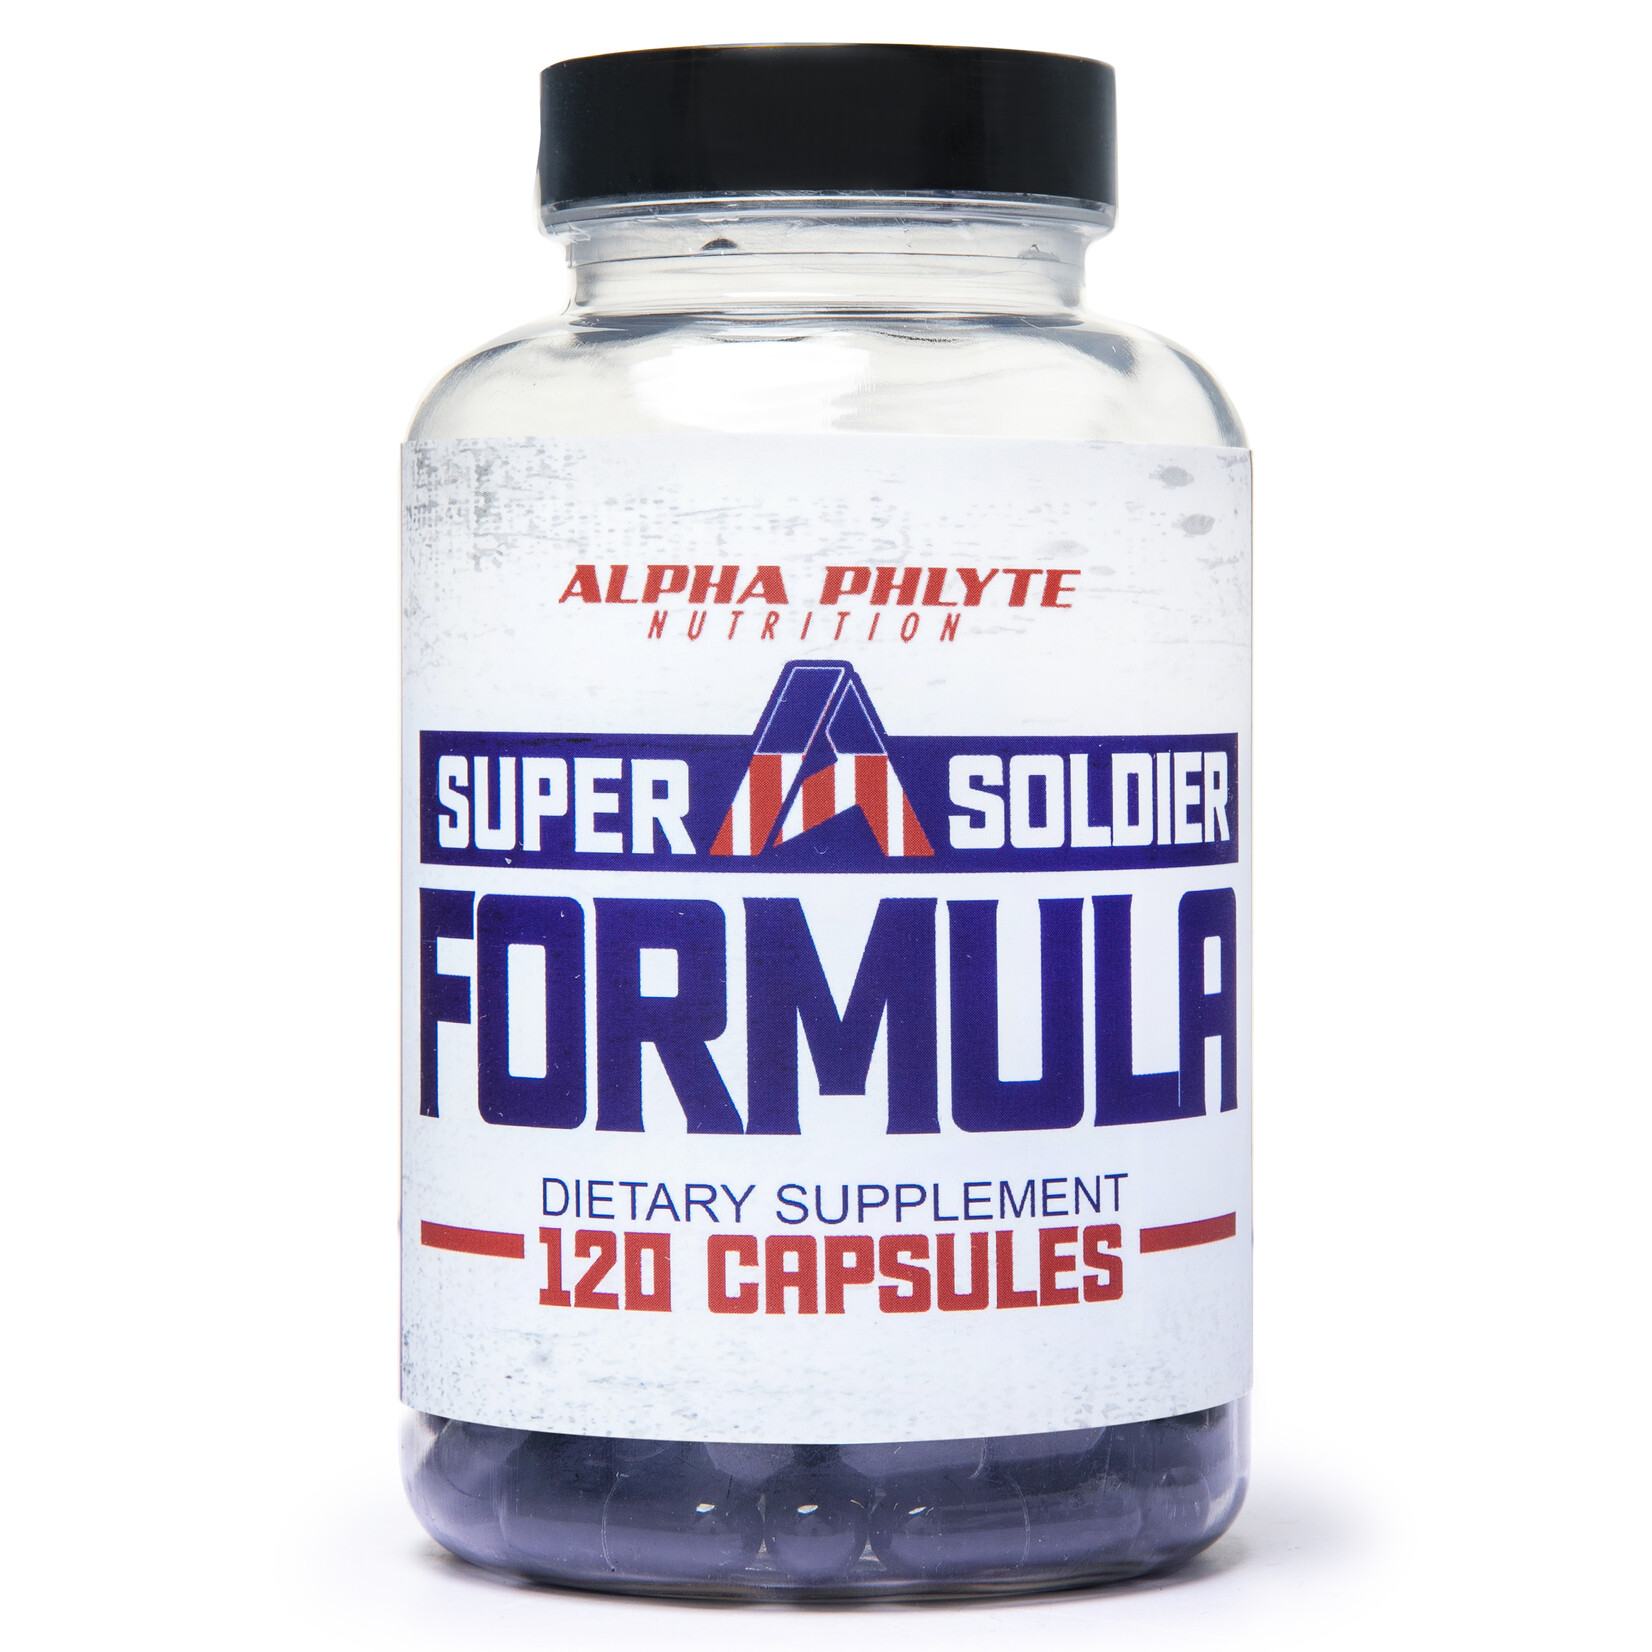 Alpha Phlyte Nutrition SUPER SOLDIER FORMULA